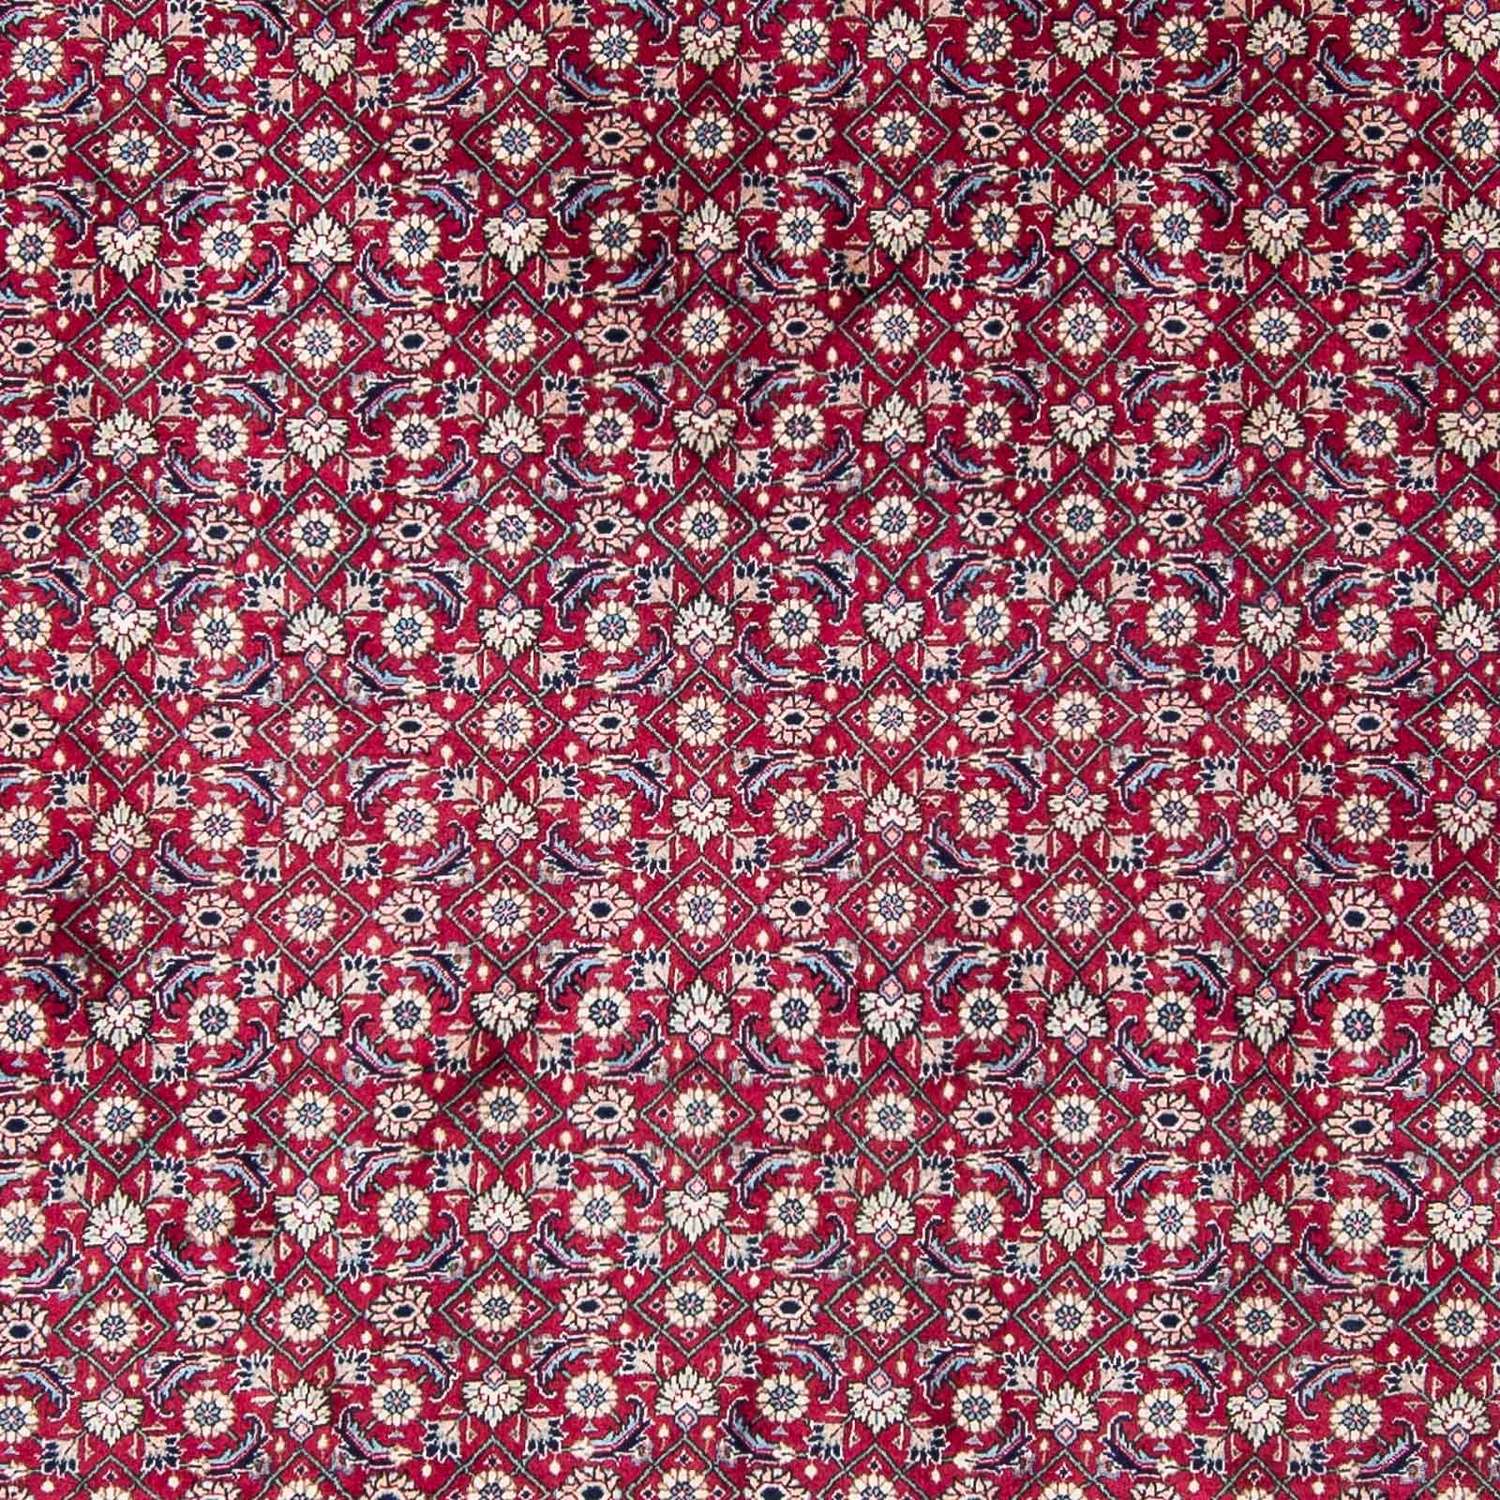 Persisk teppe - Nomadisk - 328 x 254 cm - rød